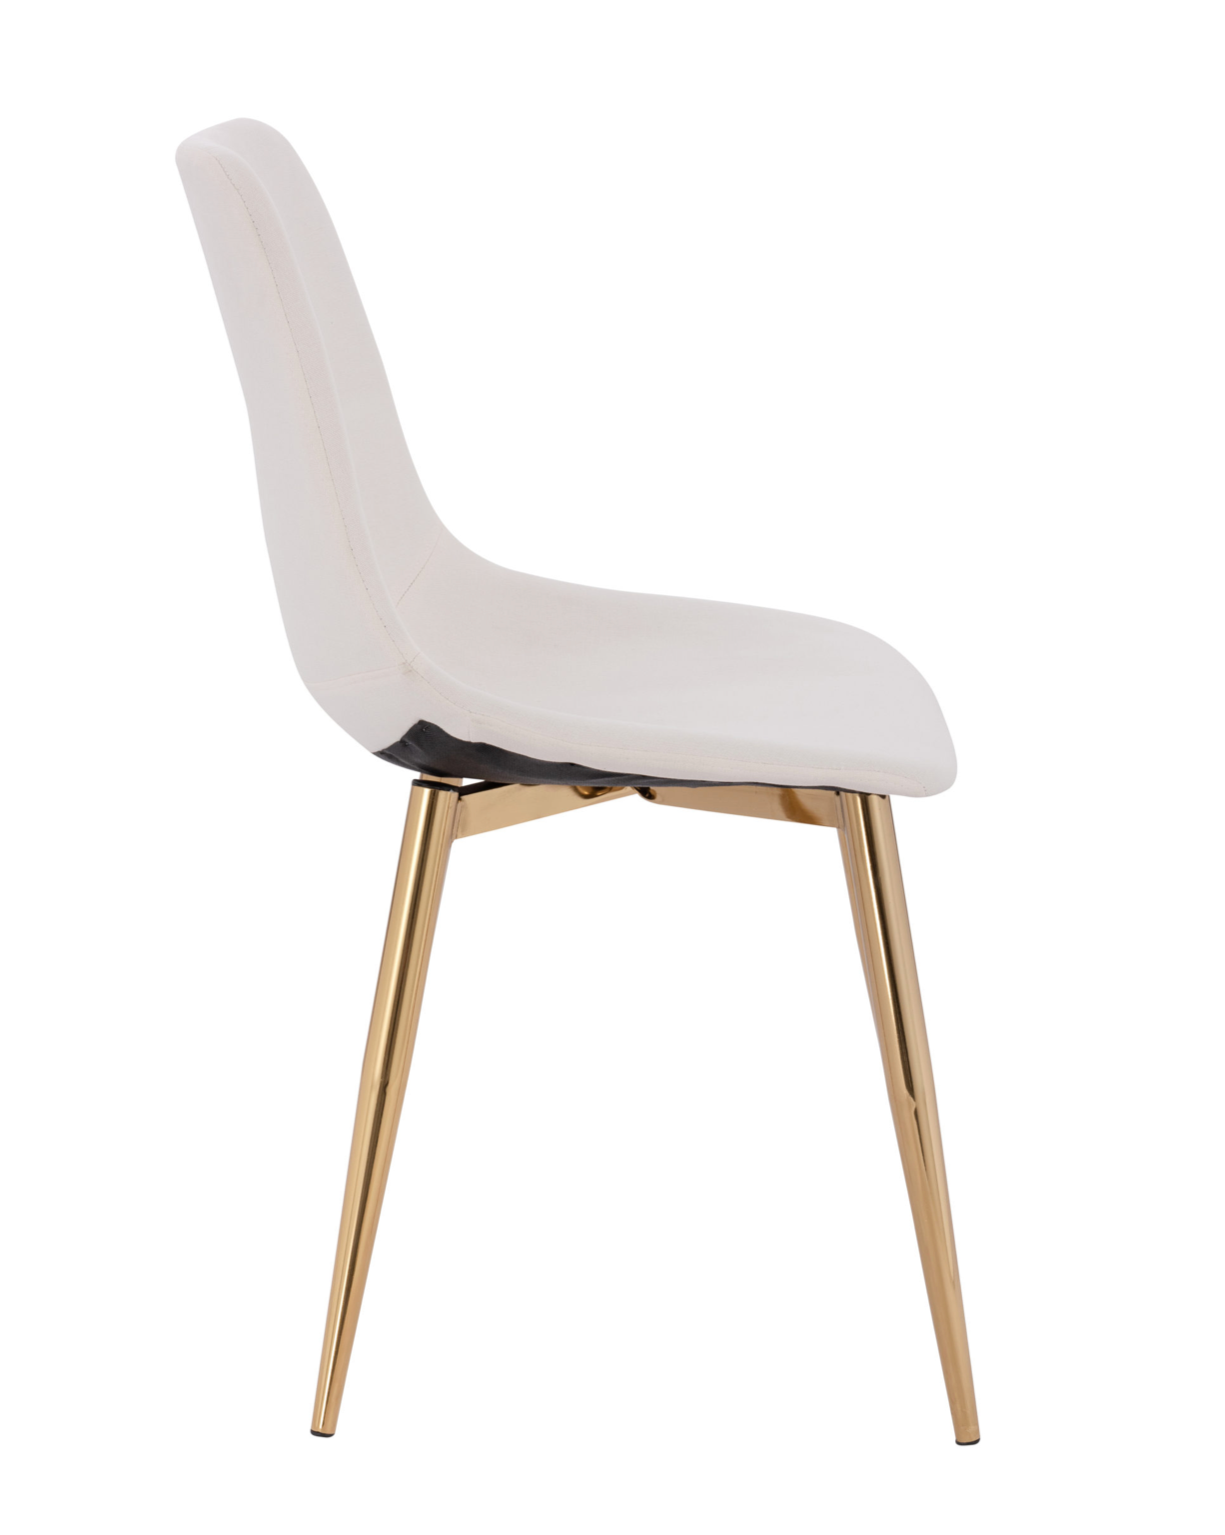 Dorian Linen Chair